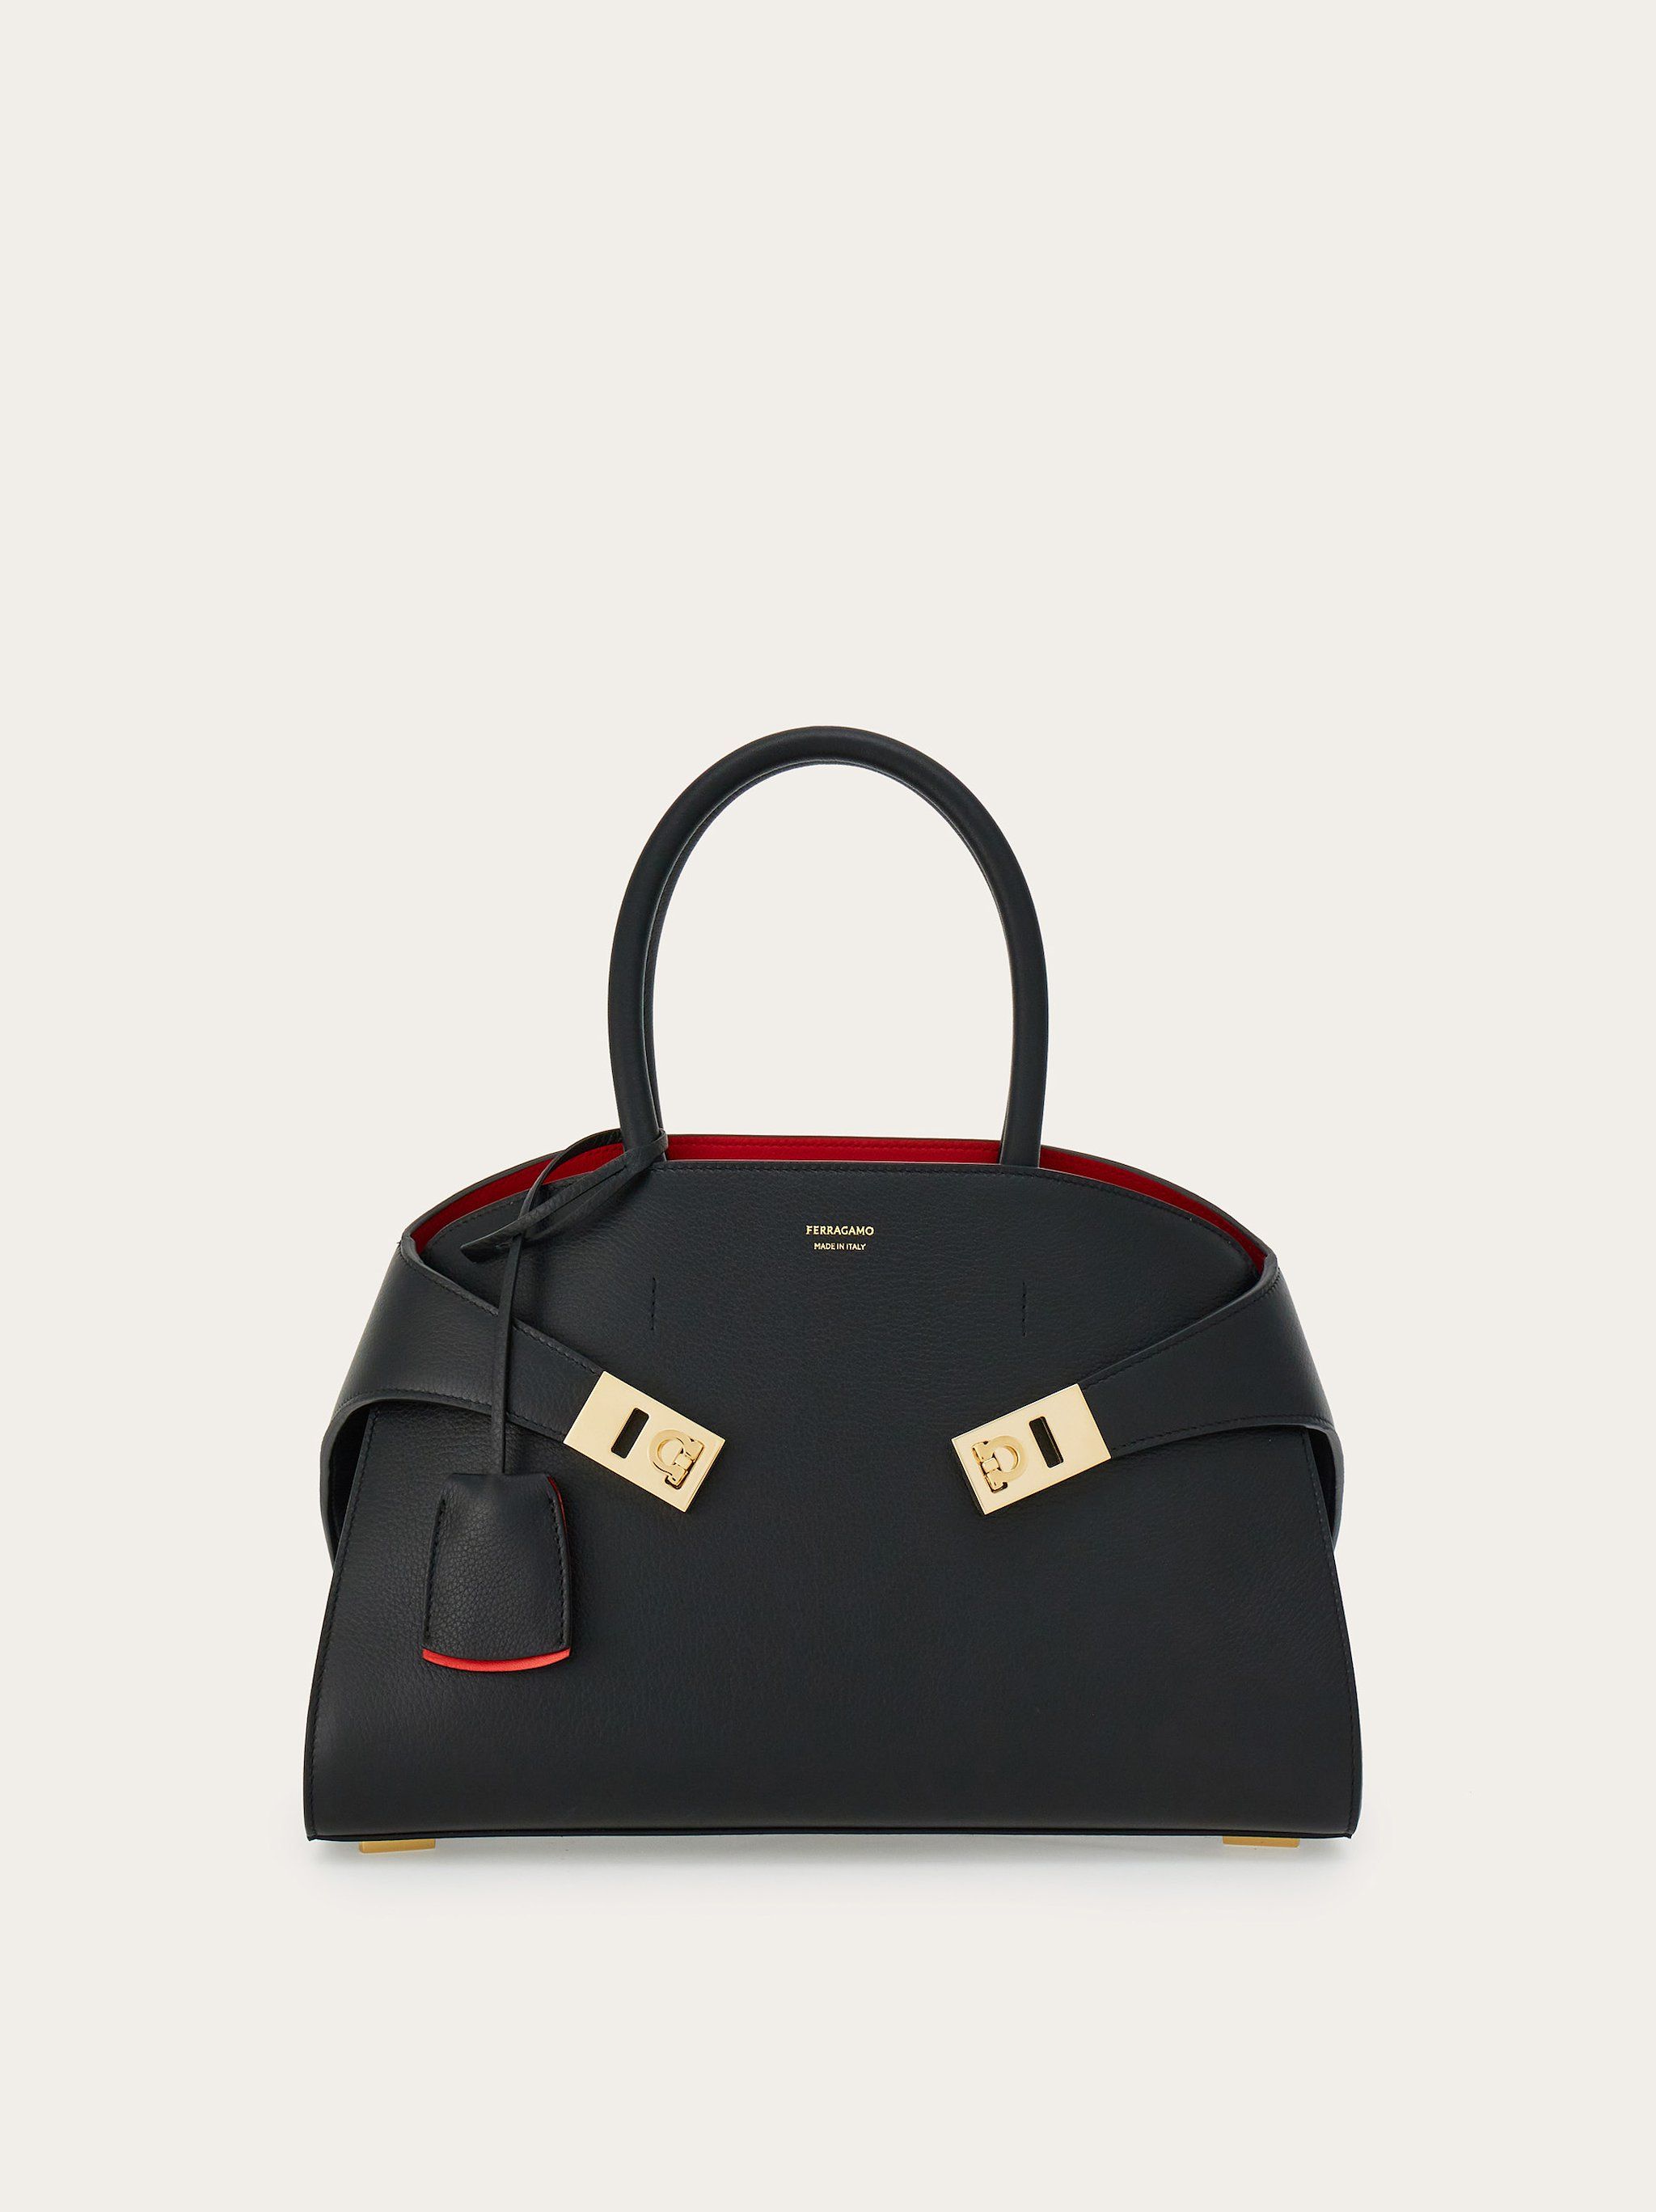 Hug handbag (S) | brown | Top Handles & Satchels Women's | Ferragamo GB | Ferragamo (EU)